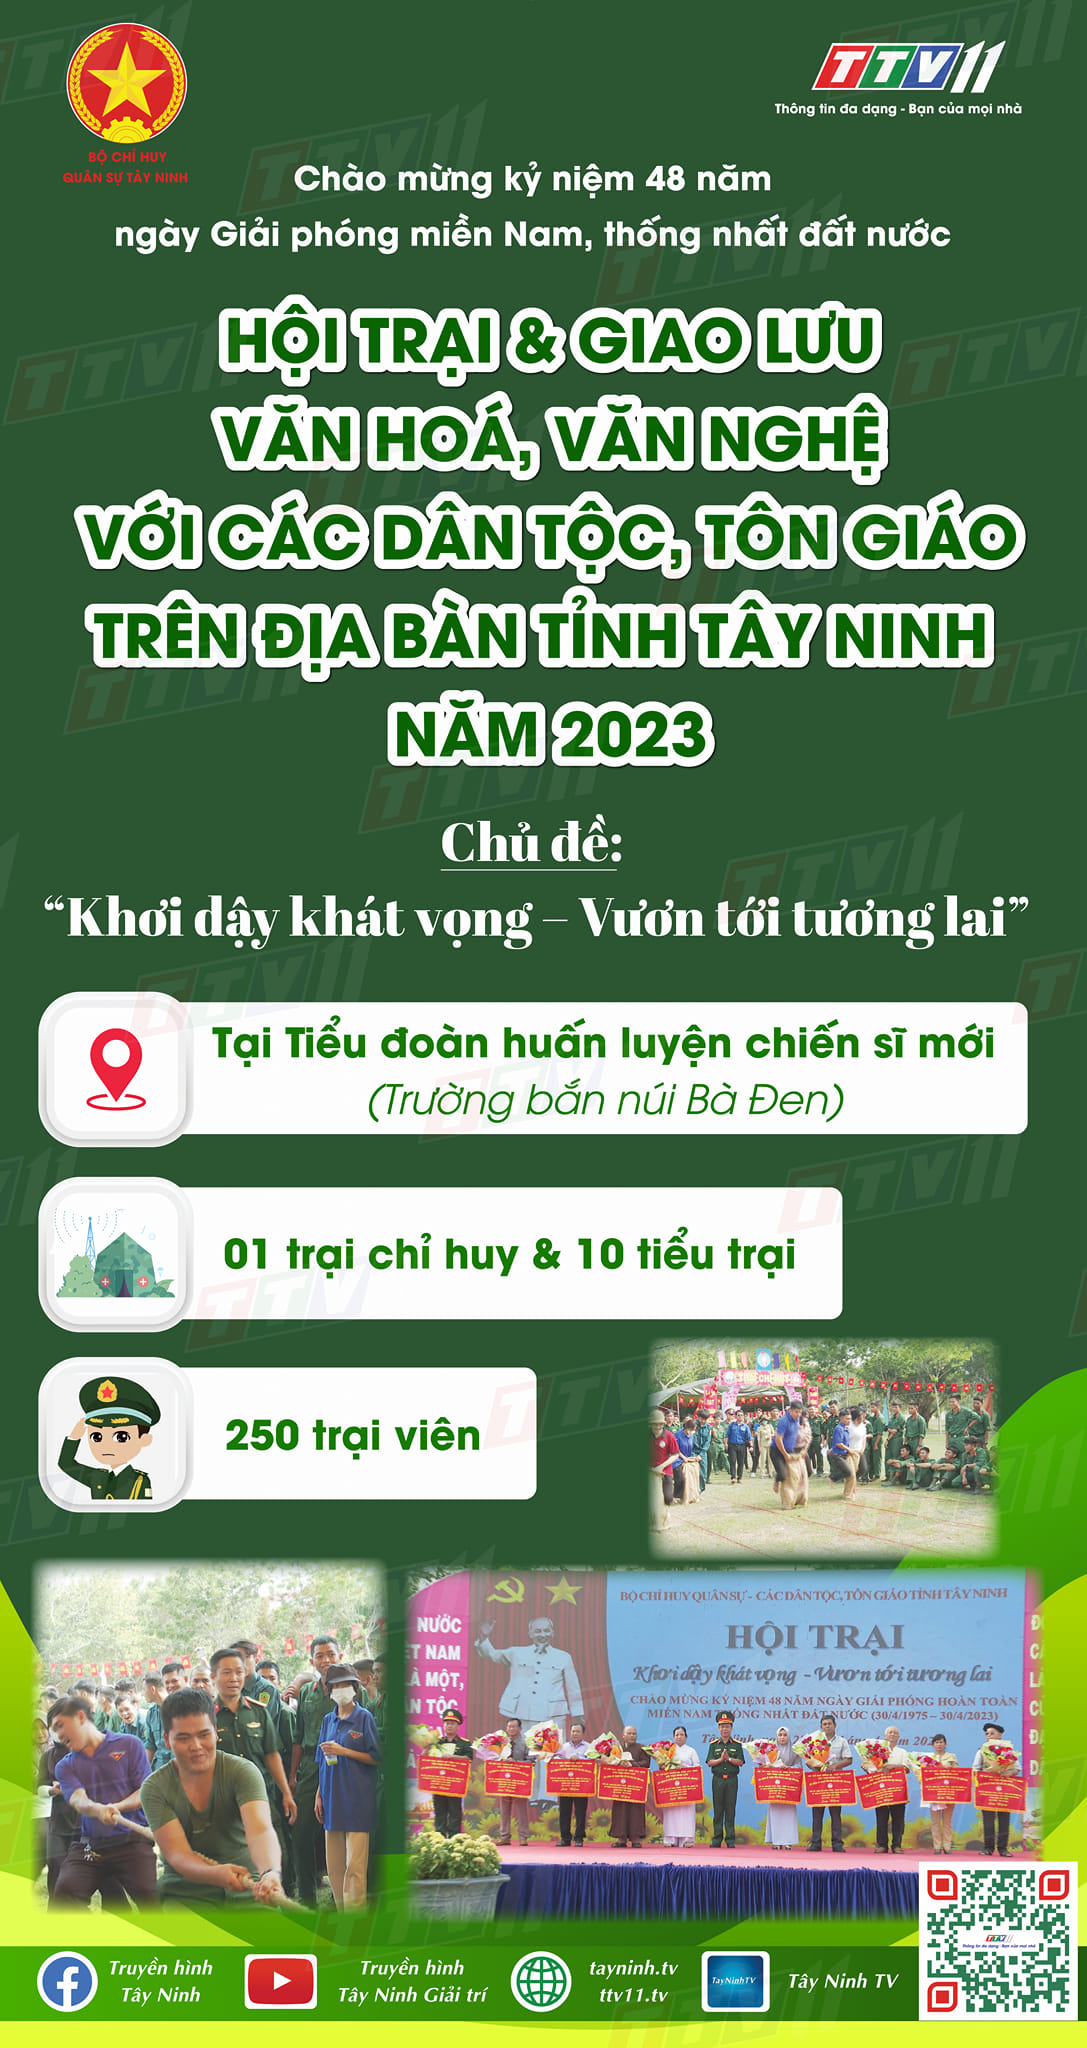 Hội trại & Giao lưu văn hoá, văn nghệ với các dân tộc, tôn giáo trên địa bàn tỉnh Tây Ninh năm 2023